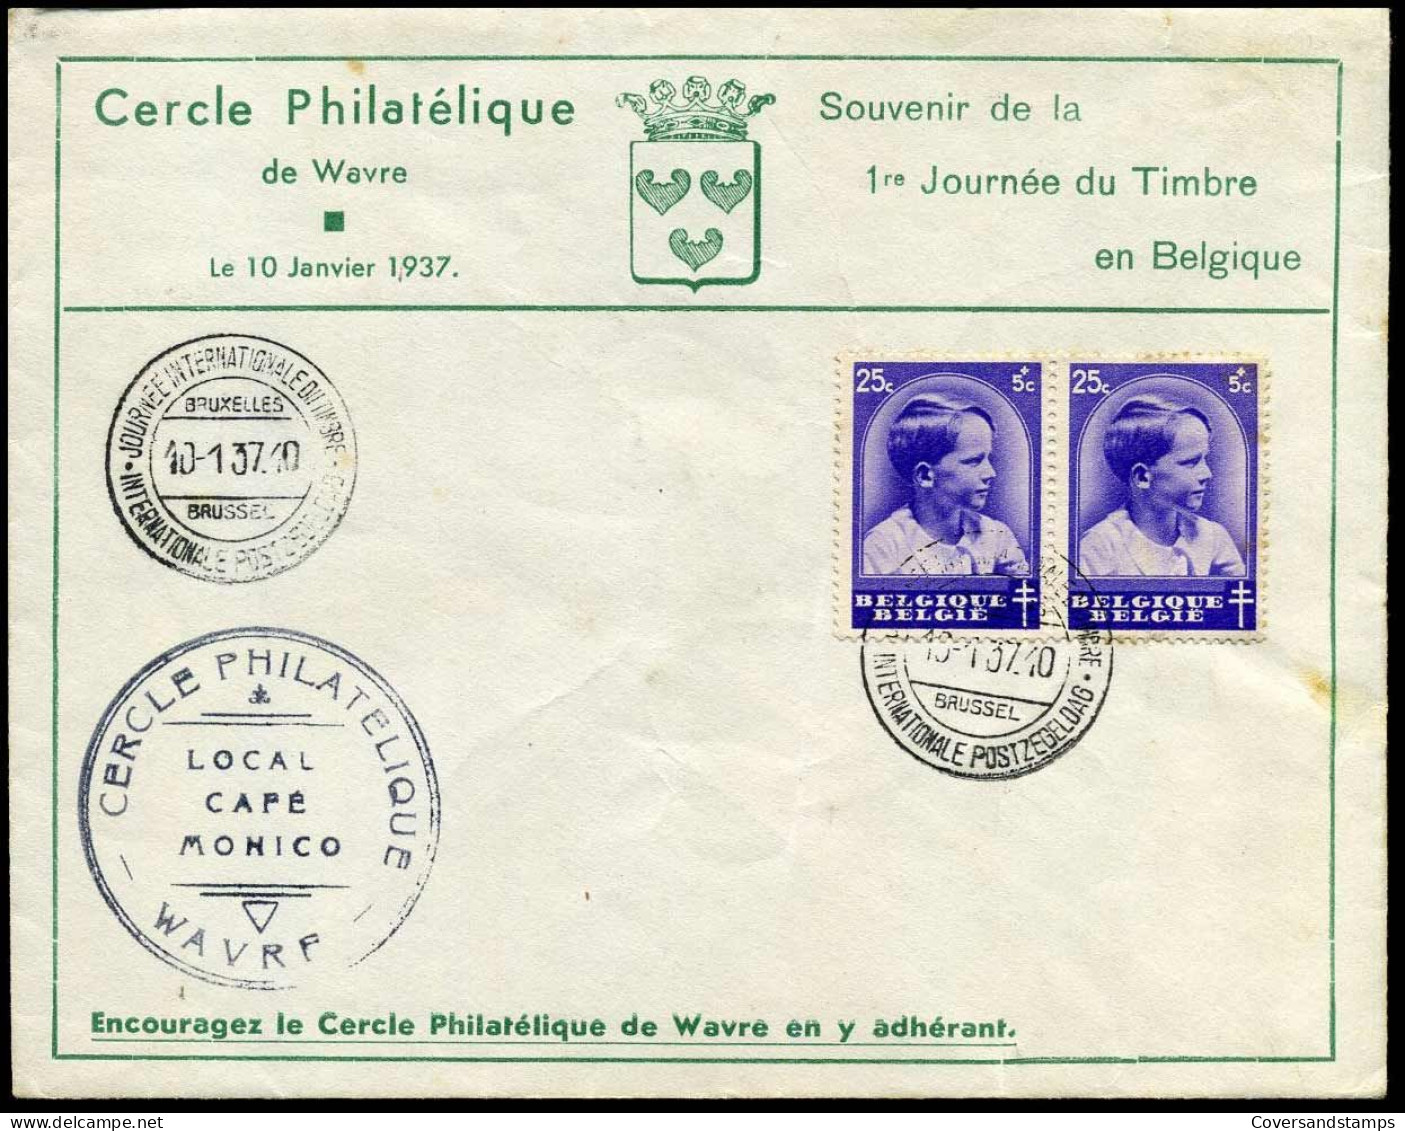 439 In Paar - Cercle Philatélique De Wavre - Souvenir De La 1re Journée Du Timbre En Belgique - Covers & Documents